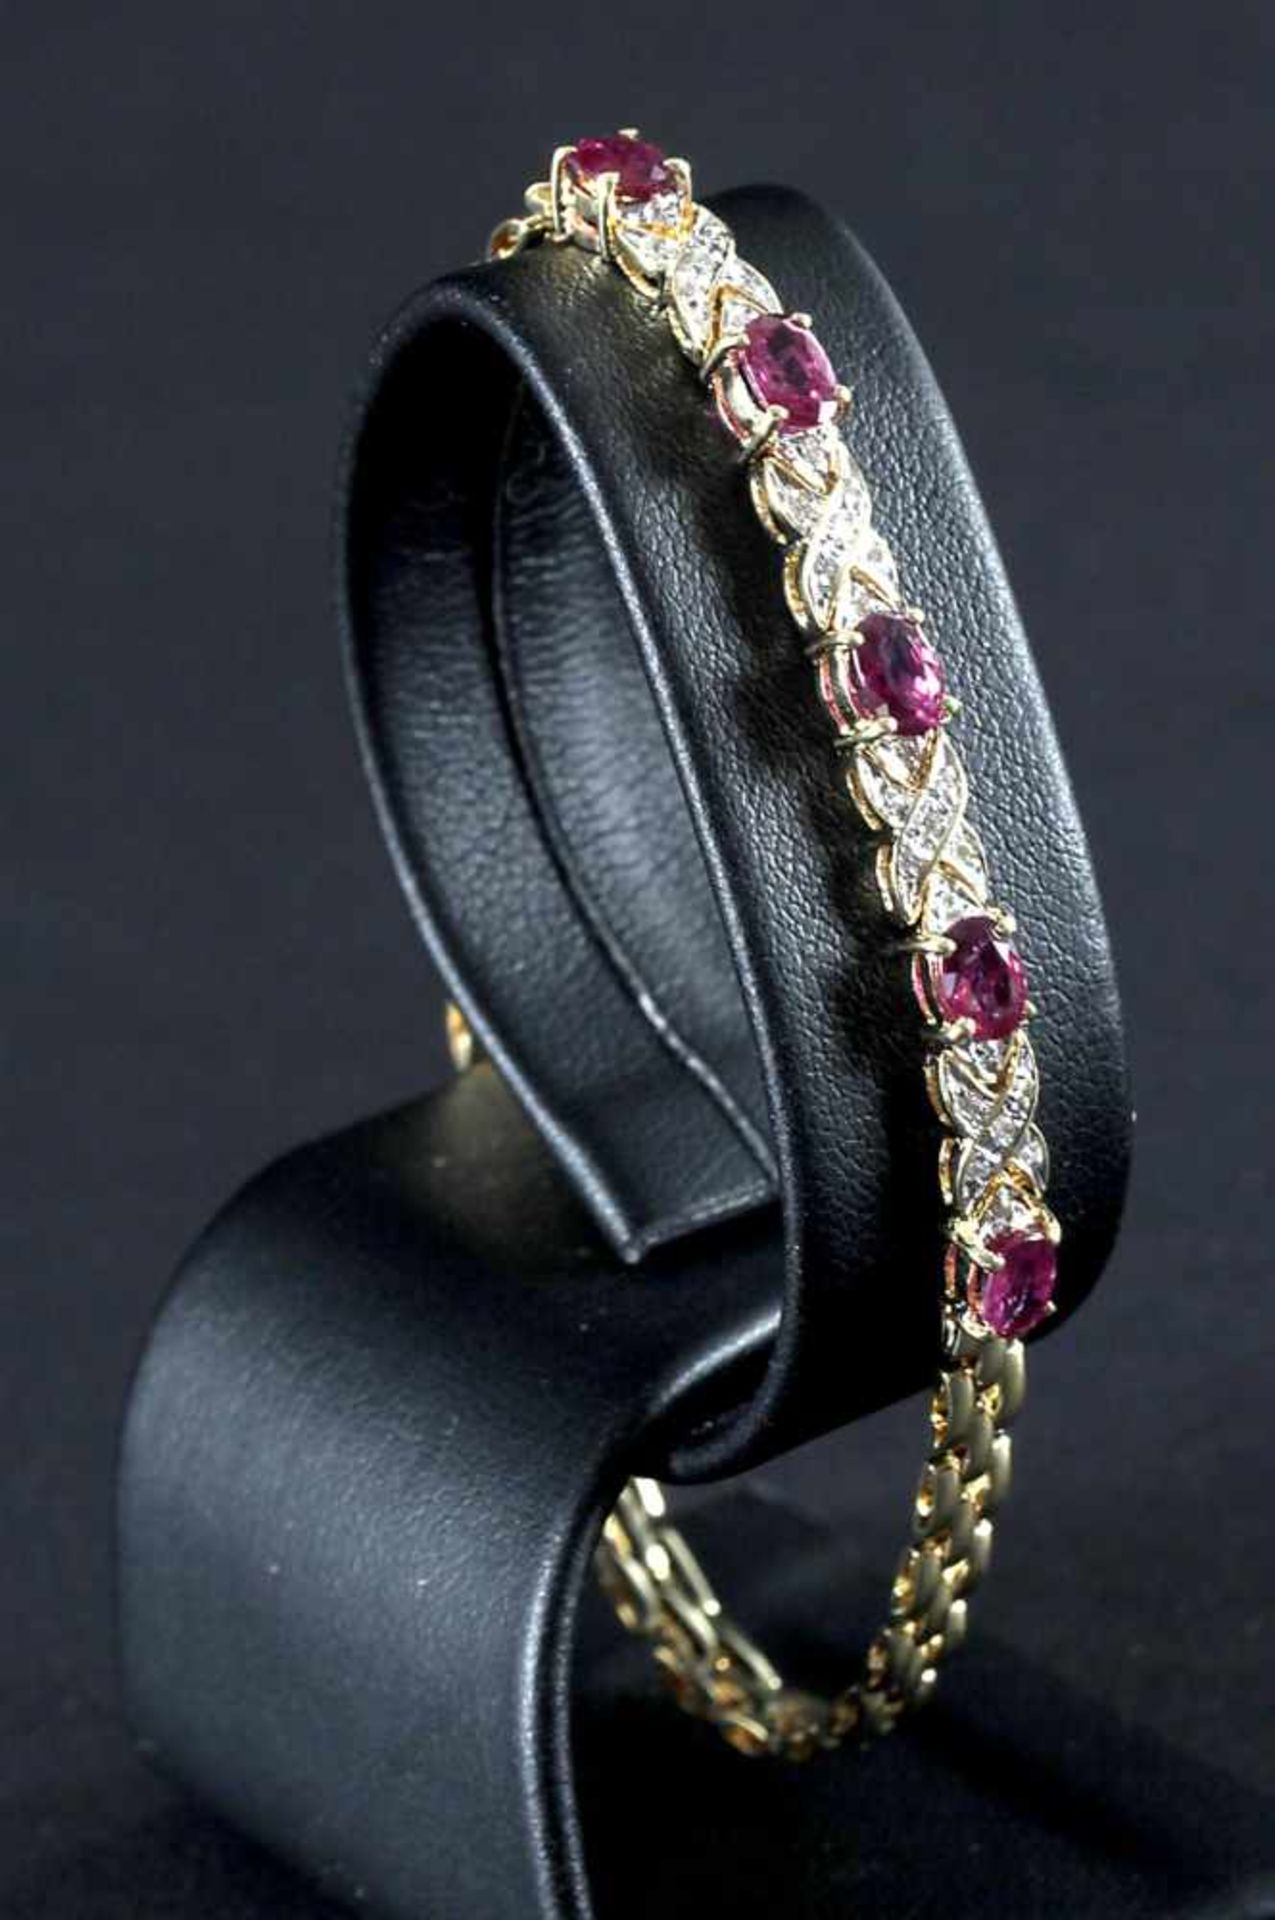 Armband mit Rubinen und Diamanten, 750er GG - Bild 2 aus 2